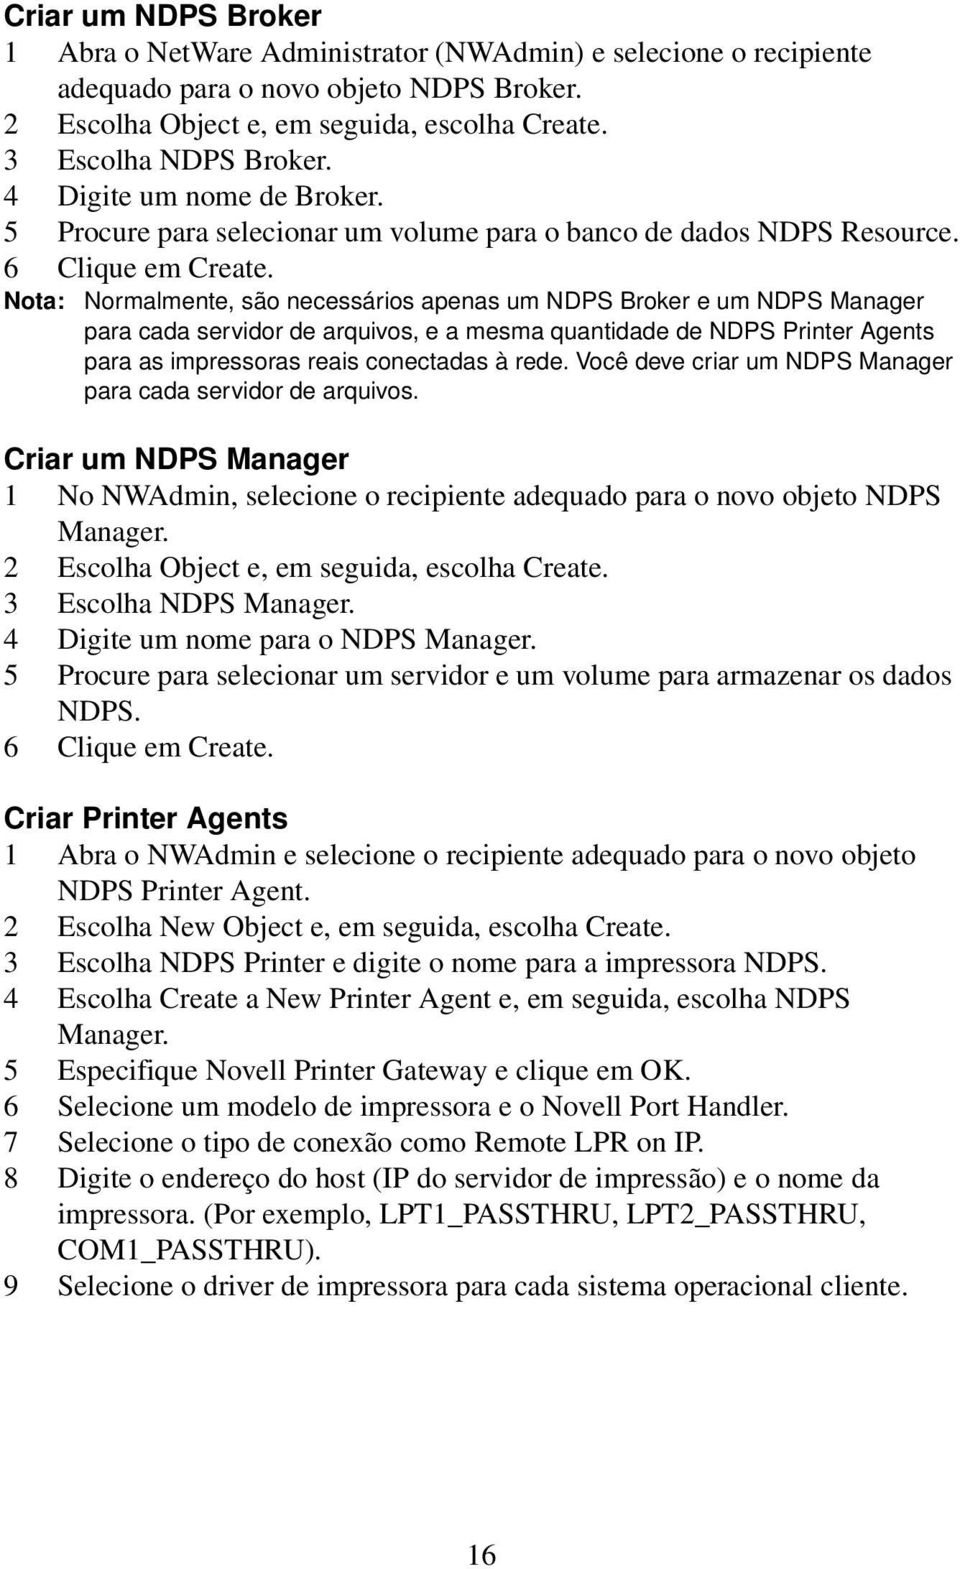 Nota: Normalmente, são necessários apenas um NDPS Broker e um NDPS Manager para cada servidor de arquivos, e a mesma quantidade de NDPS Printer Agents para as impressoras reais conectadas à rede.